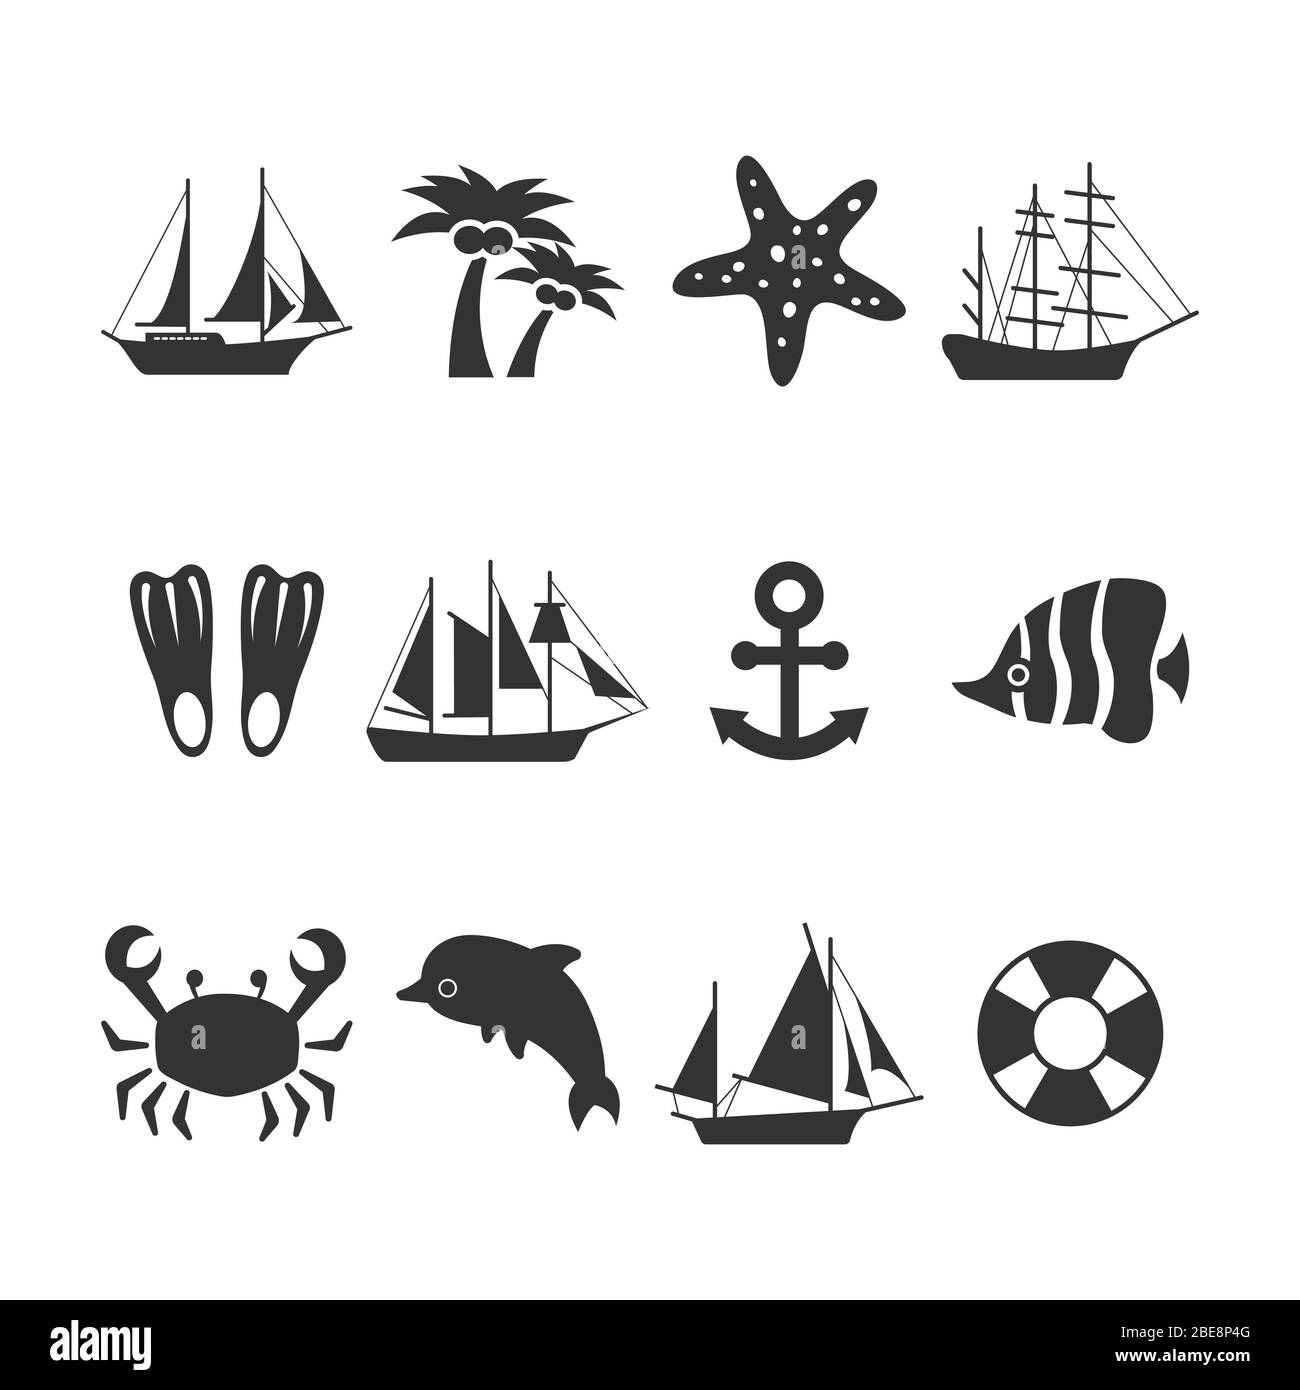 Estate mare icone vacanza set. Elementi estivi e animali, ancora e delfini, stelle marine. Illustrazione vettoriale Illustrazione Vettoriale